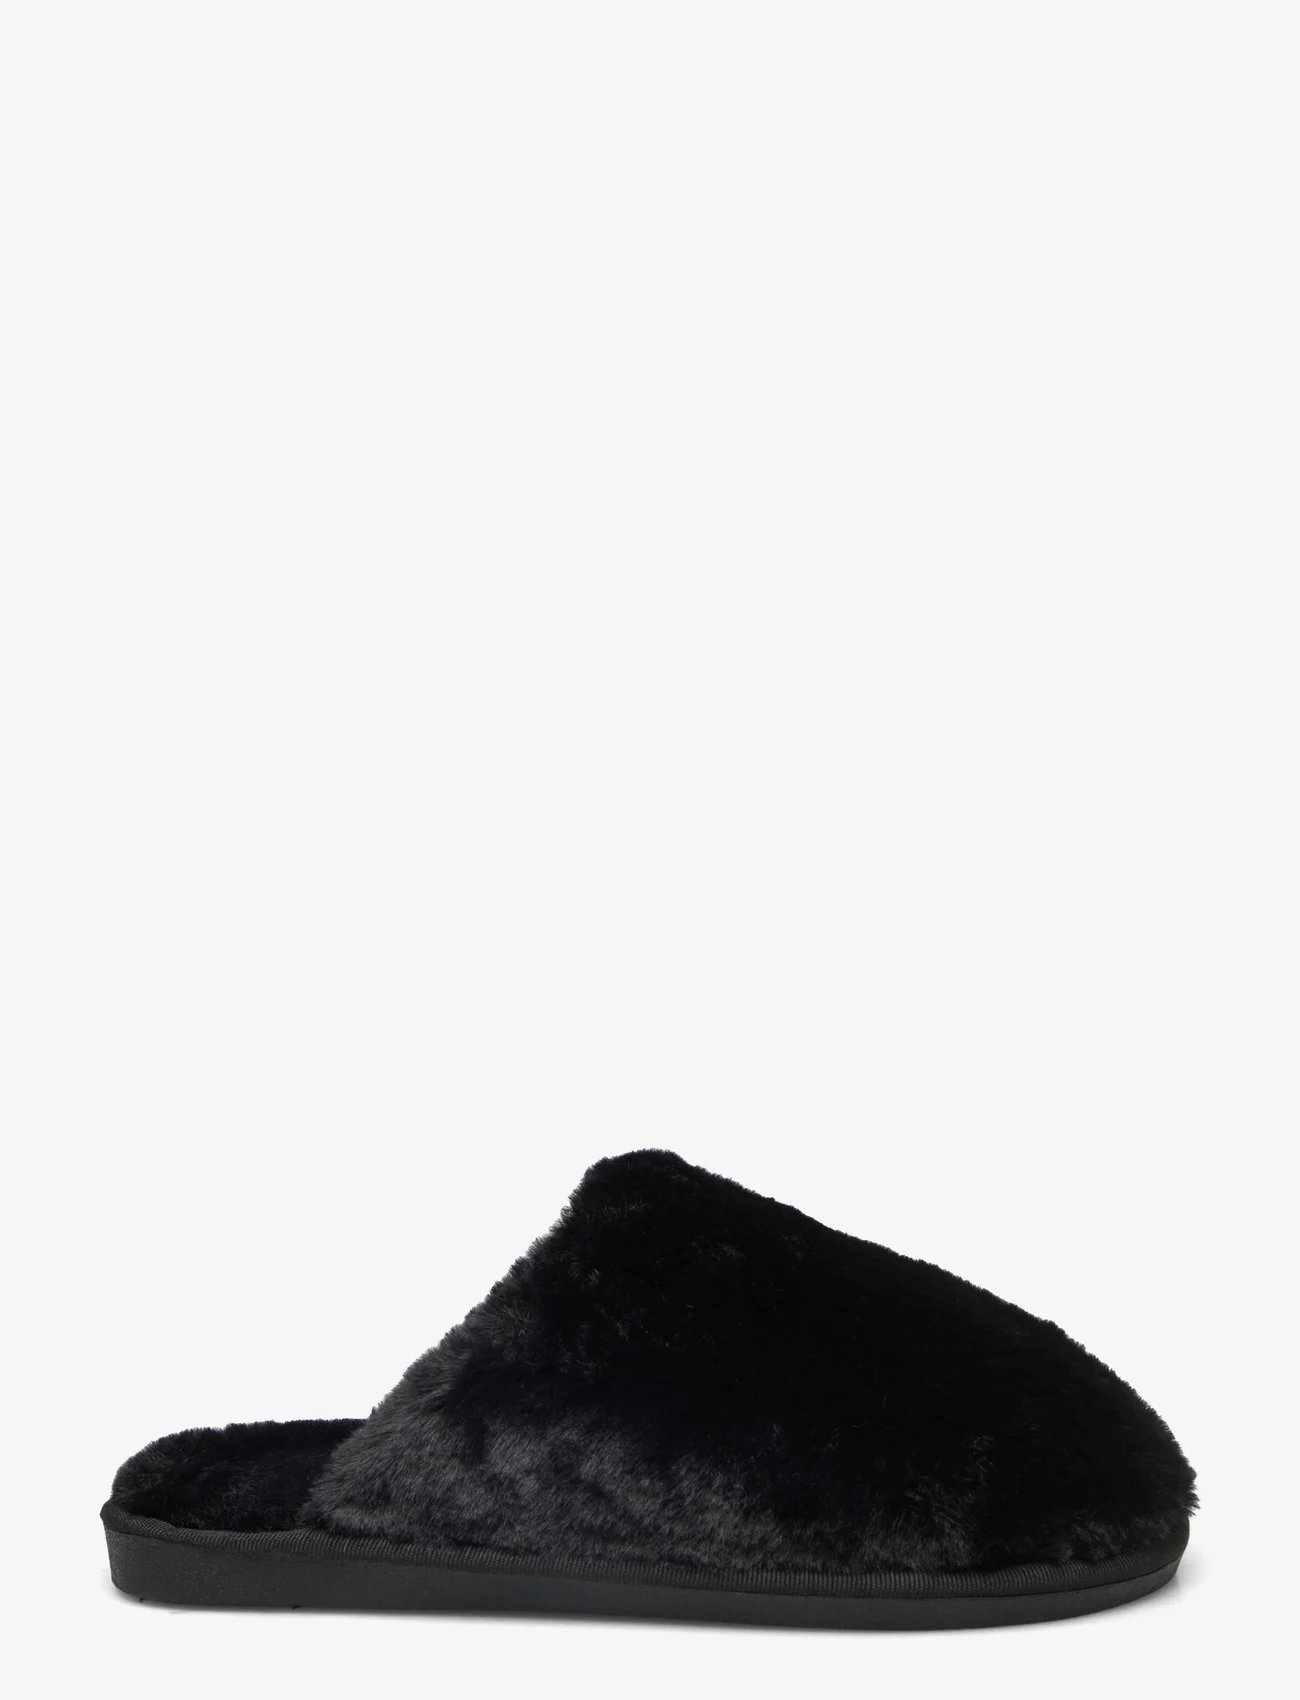 Rosemunde - Slippers - madalaimad hinnad - black - 1